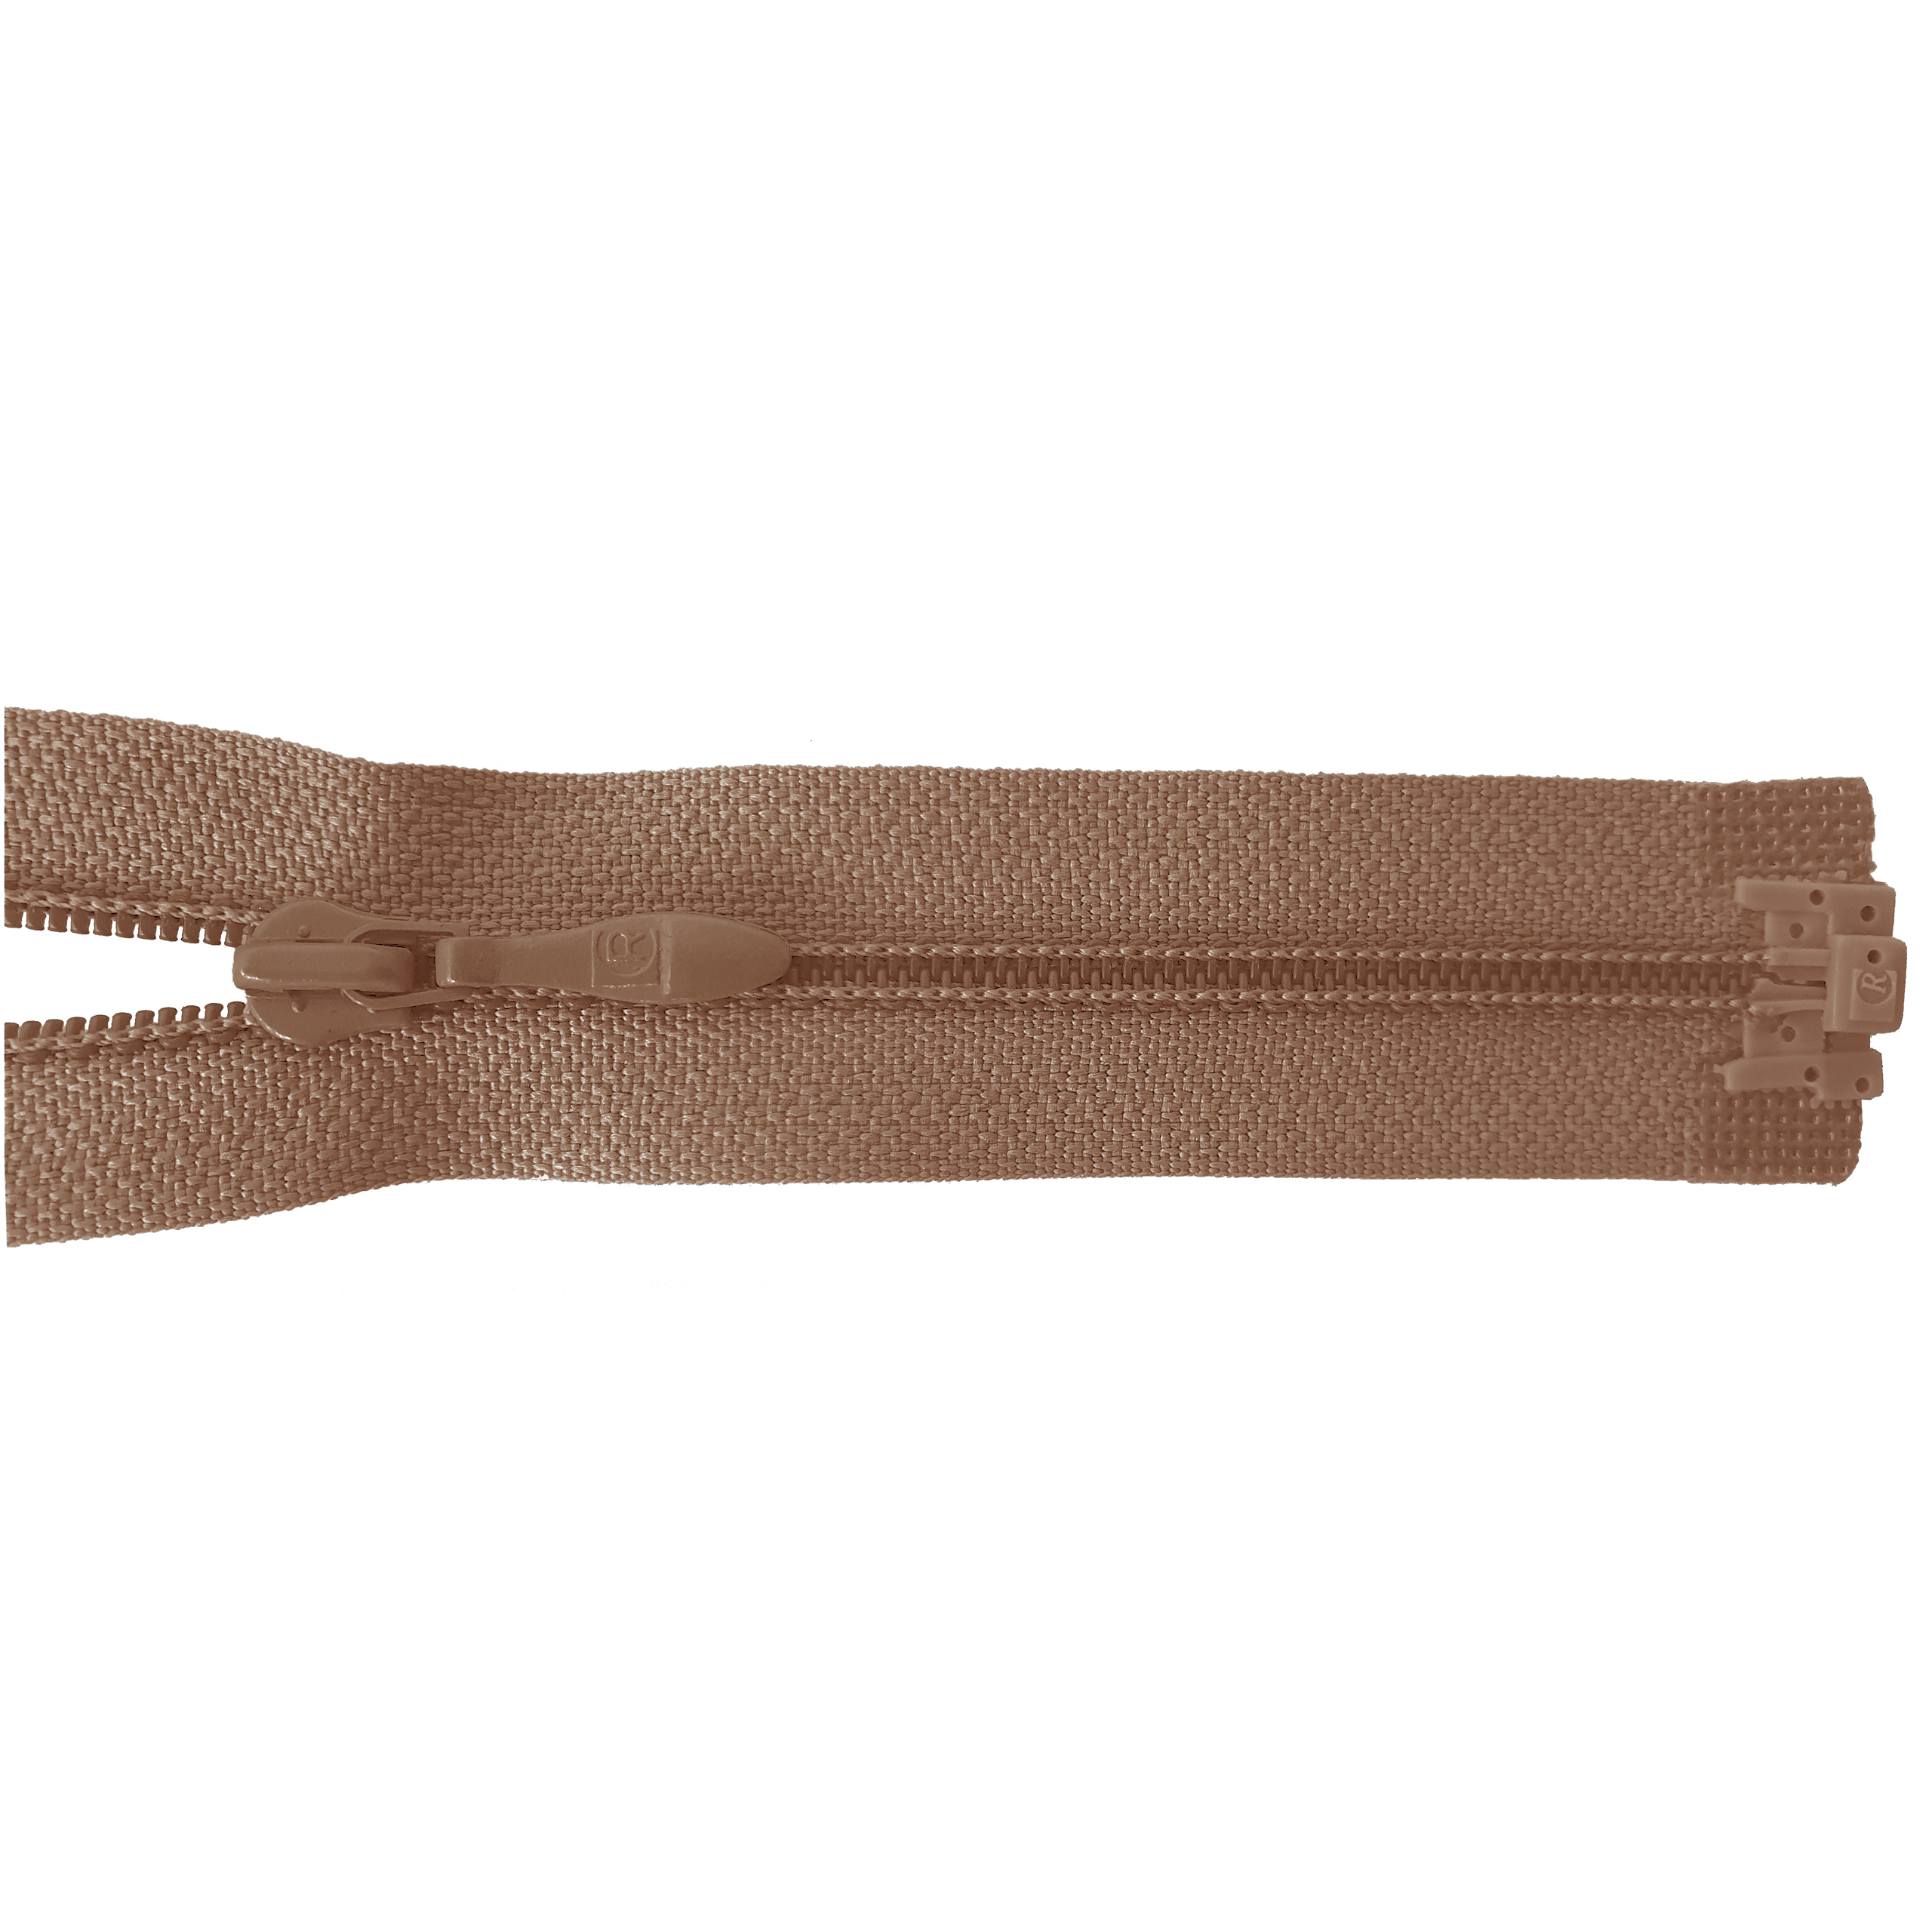 zipper 60cm,divisible, PES spiral, fein, light brown